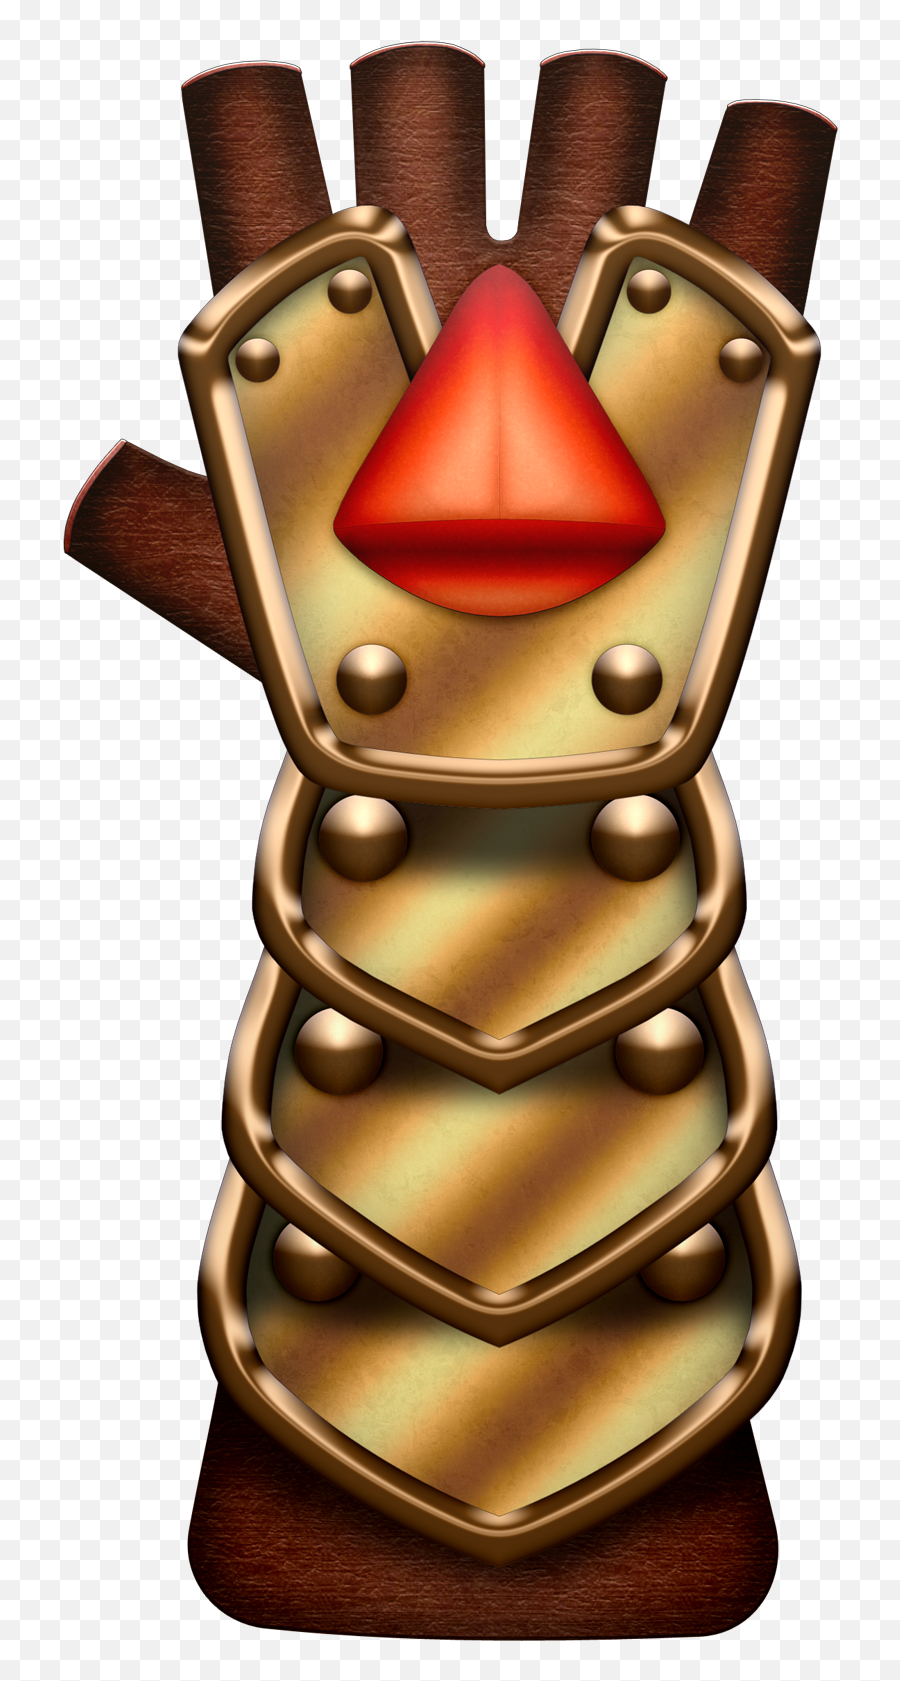 Power Gauntlets Clipart - Golden Gauntlets Oot Emoji,Infinity Gauntlet Emoji